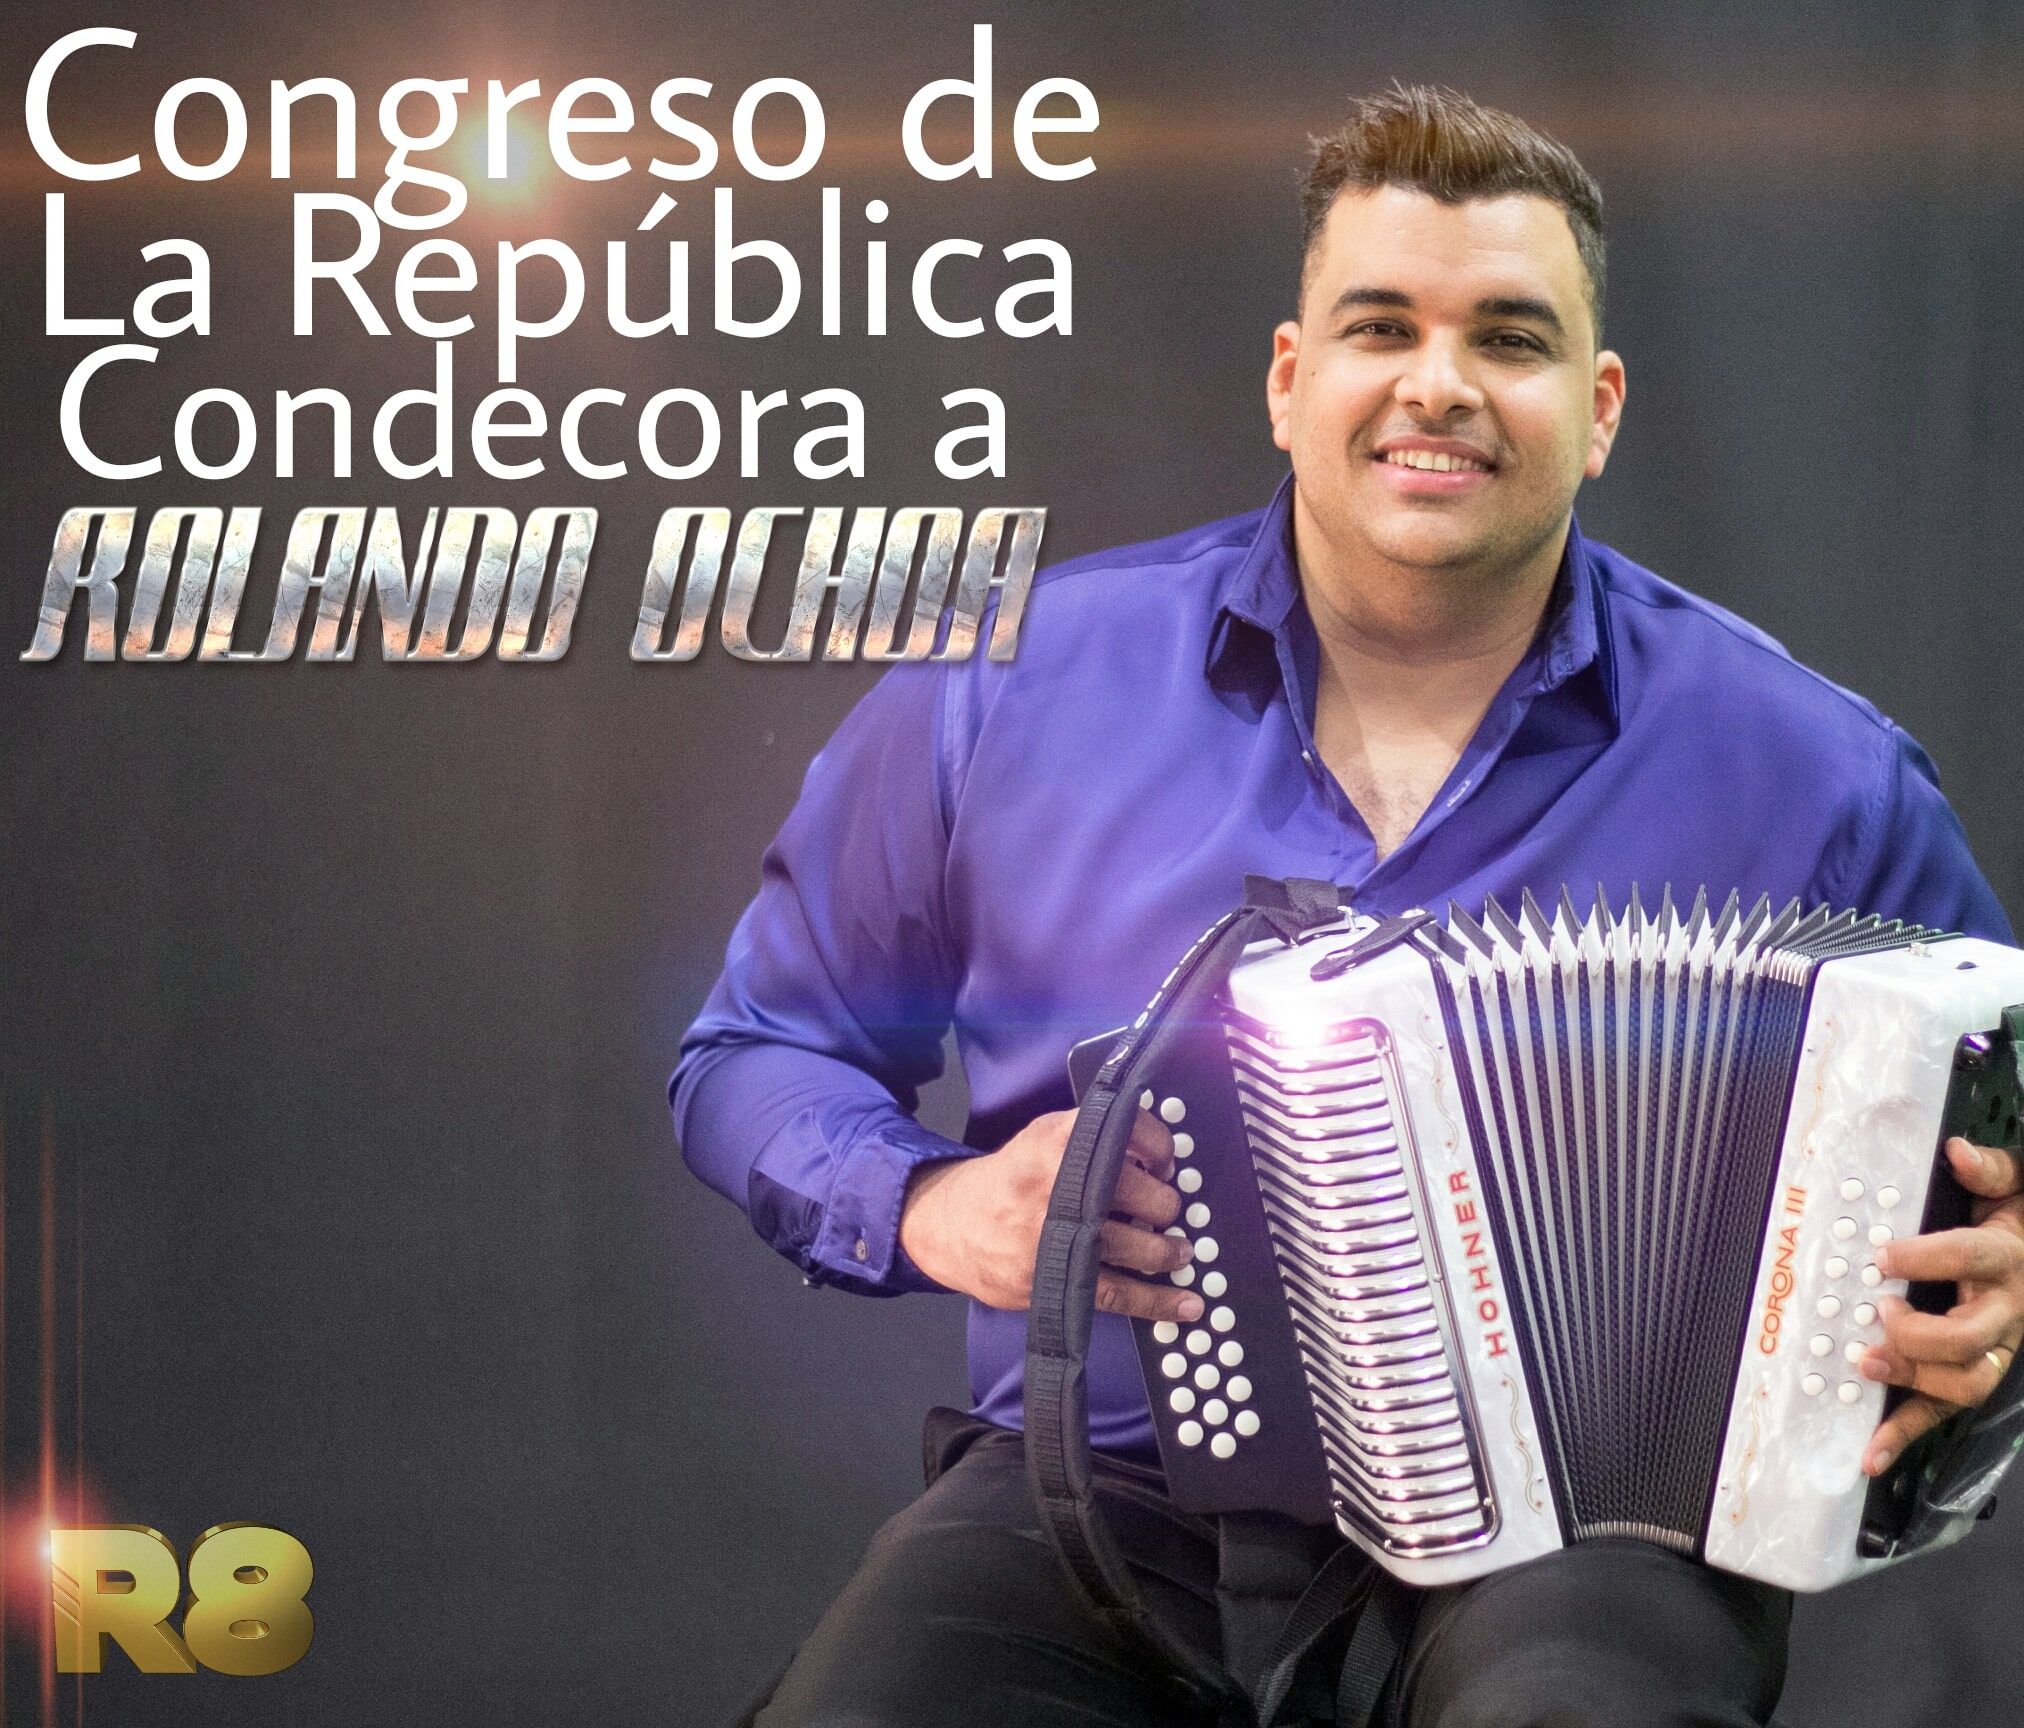 Congreso de la republica condecora a Rolando Ochoa